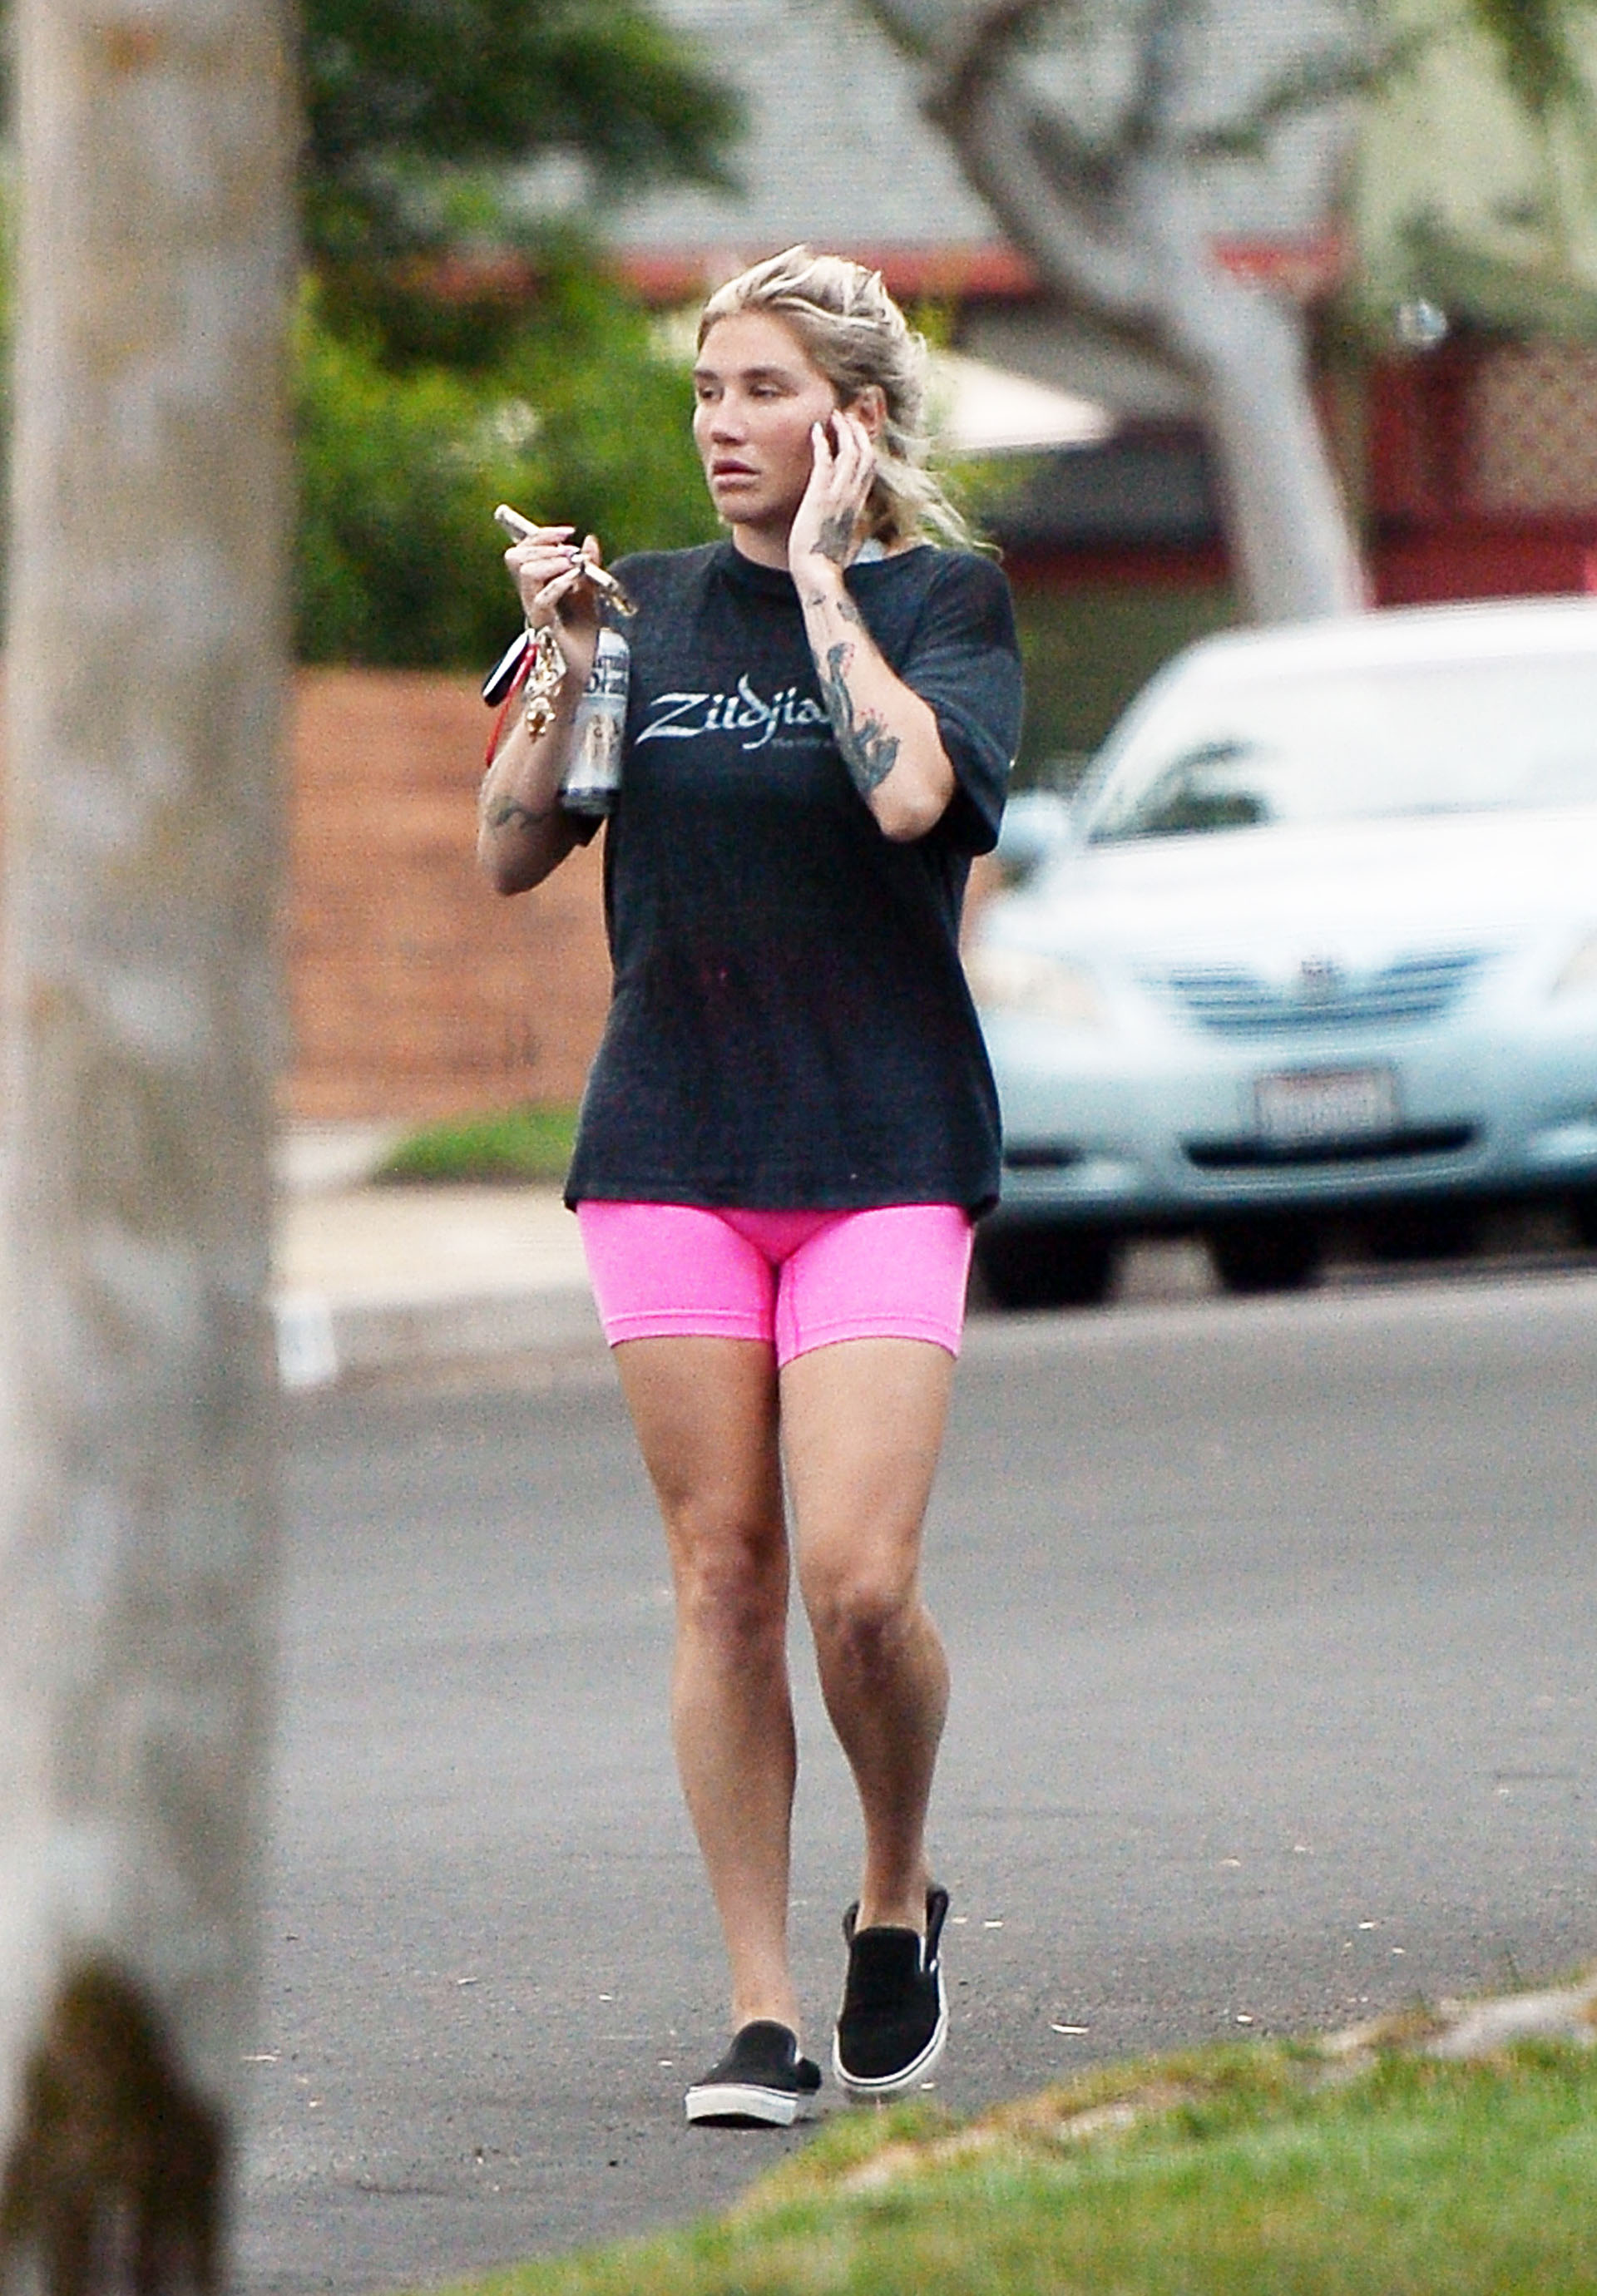 Día de entrenamiento. Kesha Steps salió a caminar por las calles de Los Ángeles. La cantante lució unas calzas deportivas color fucsia y una remera negra con una inscripción adelante